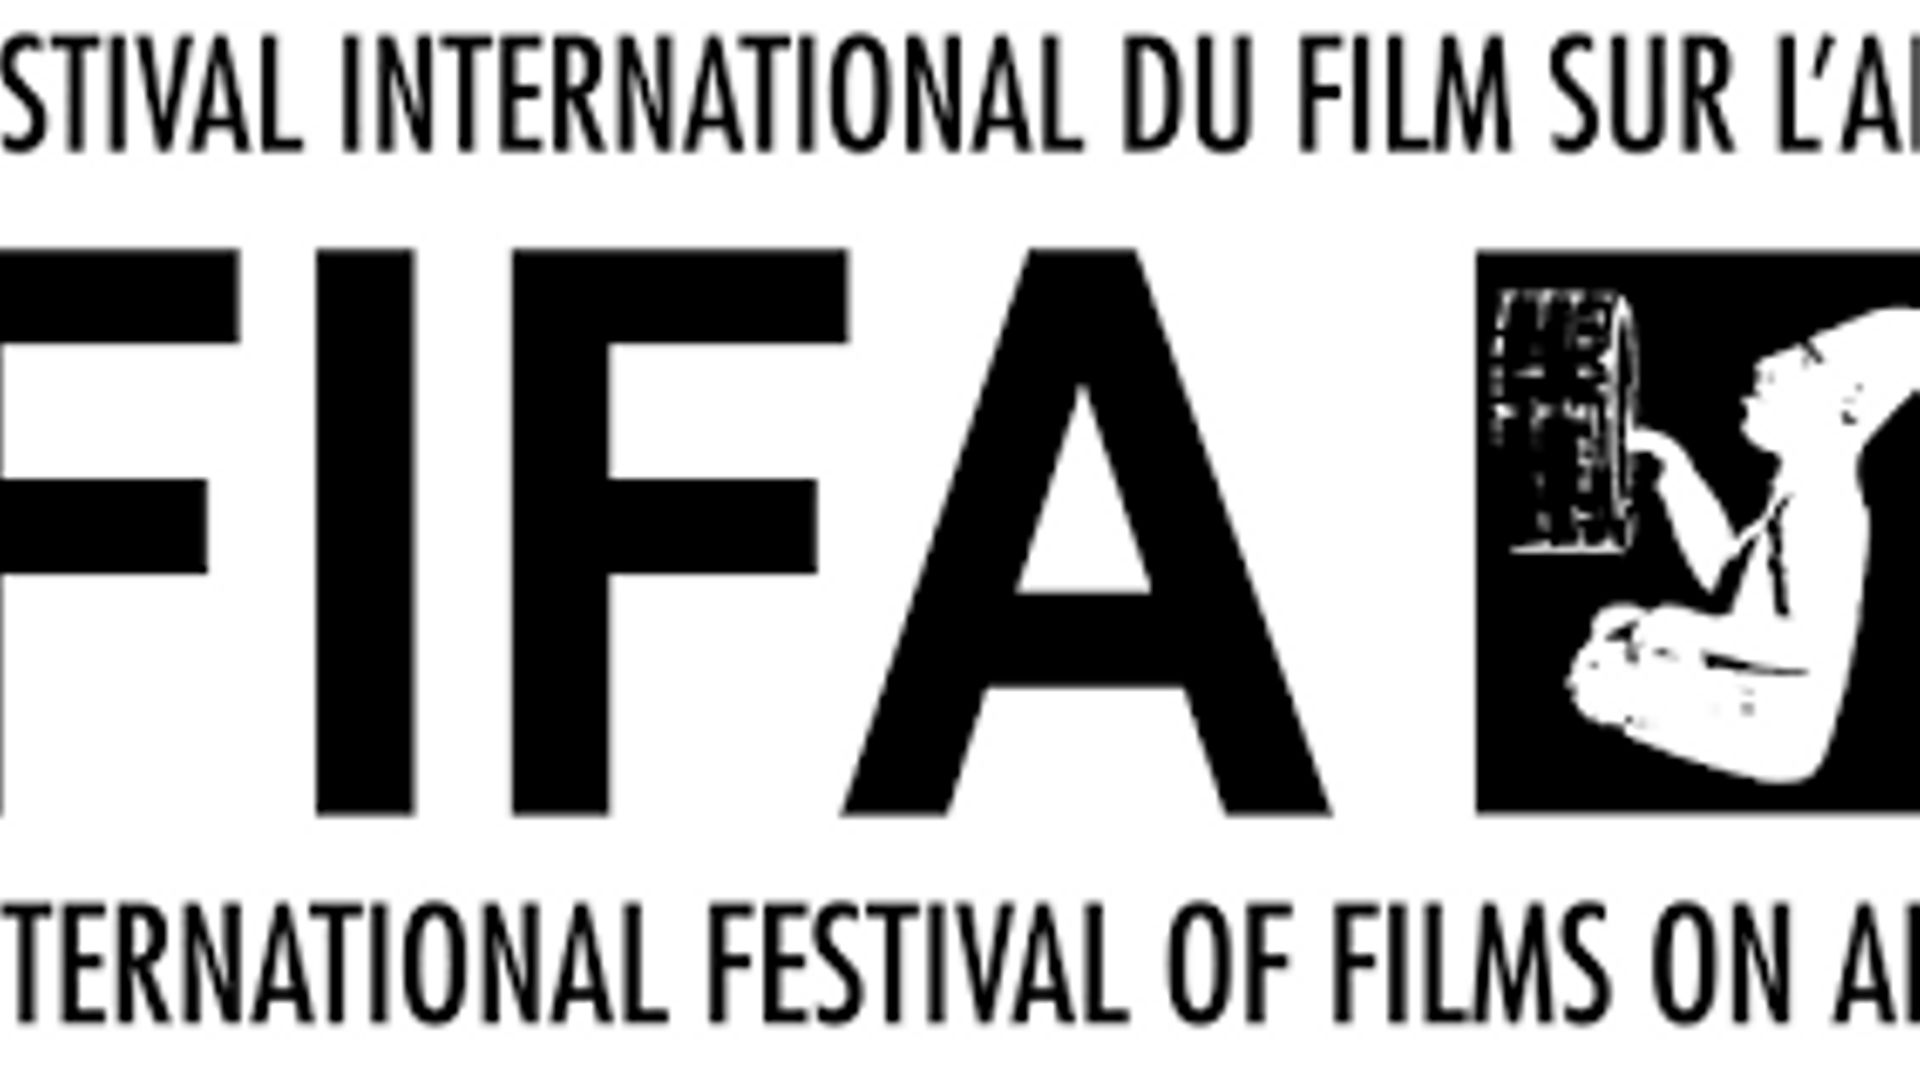 Festival du Film sur l'art rtbf.be